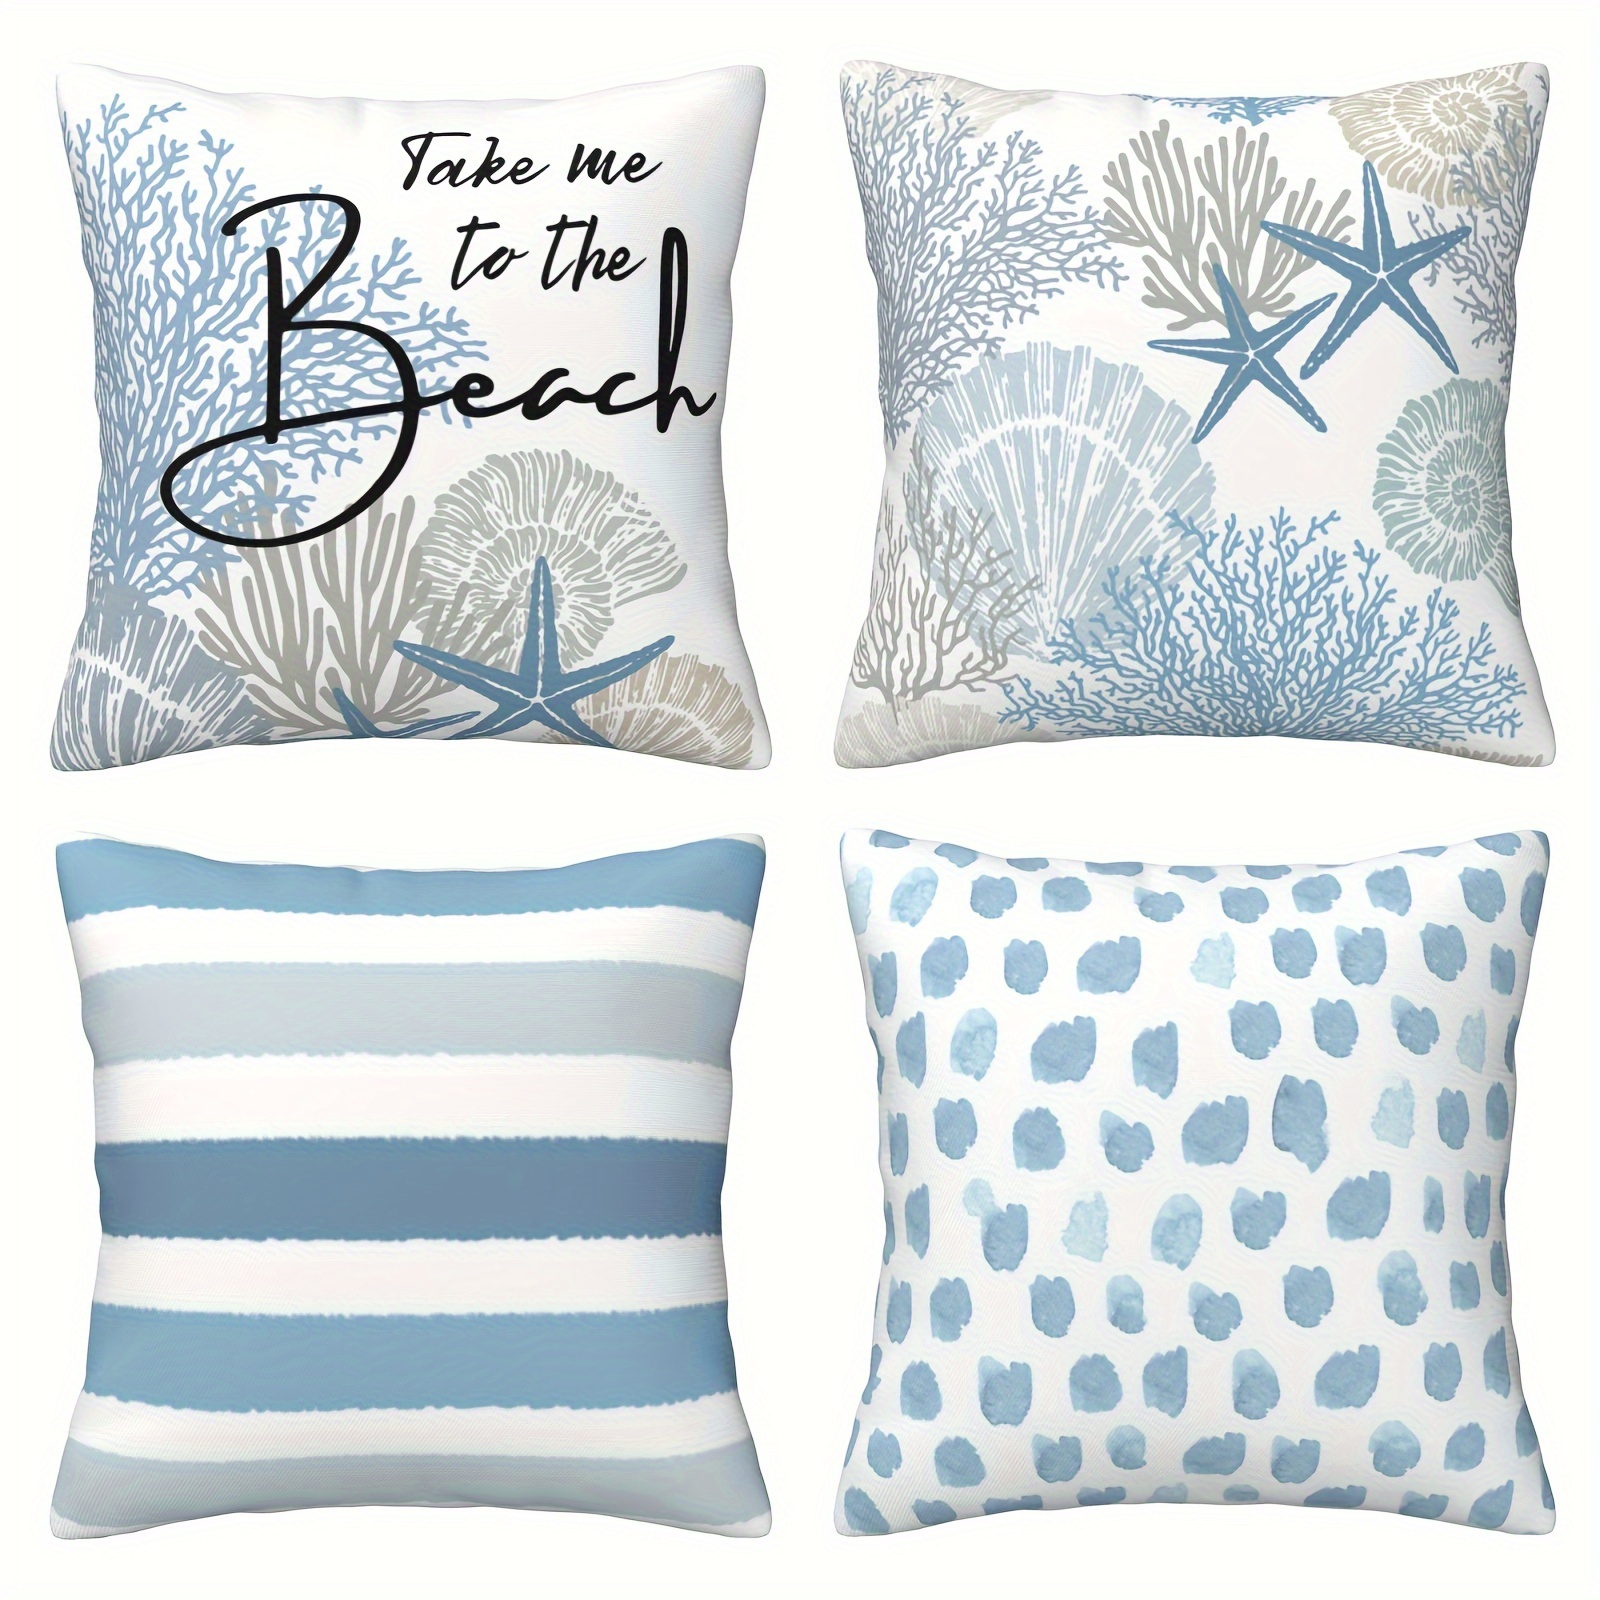 

4pcs Short Plush The Beach Summer Throw Pillow Covers, 18 X 18 Inch Blue Ocean Starfish Summer Cushion Case For Sofa Couch